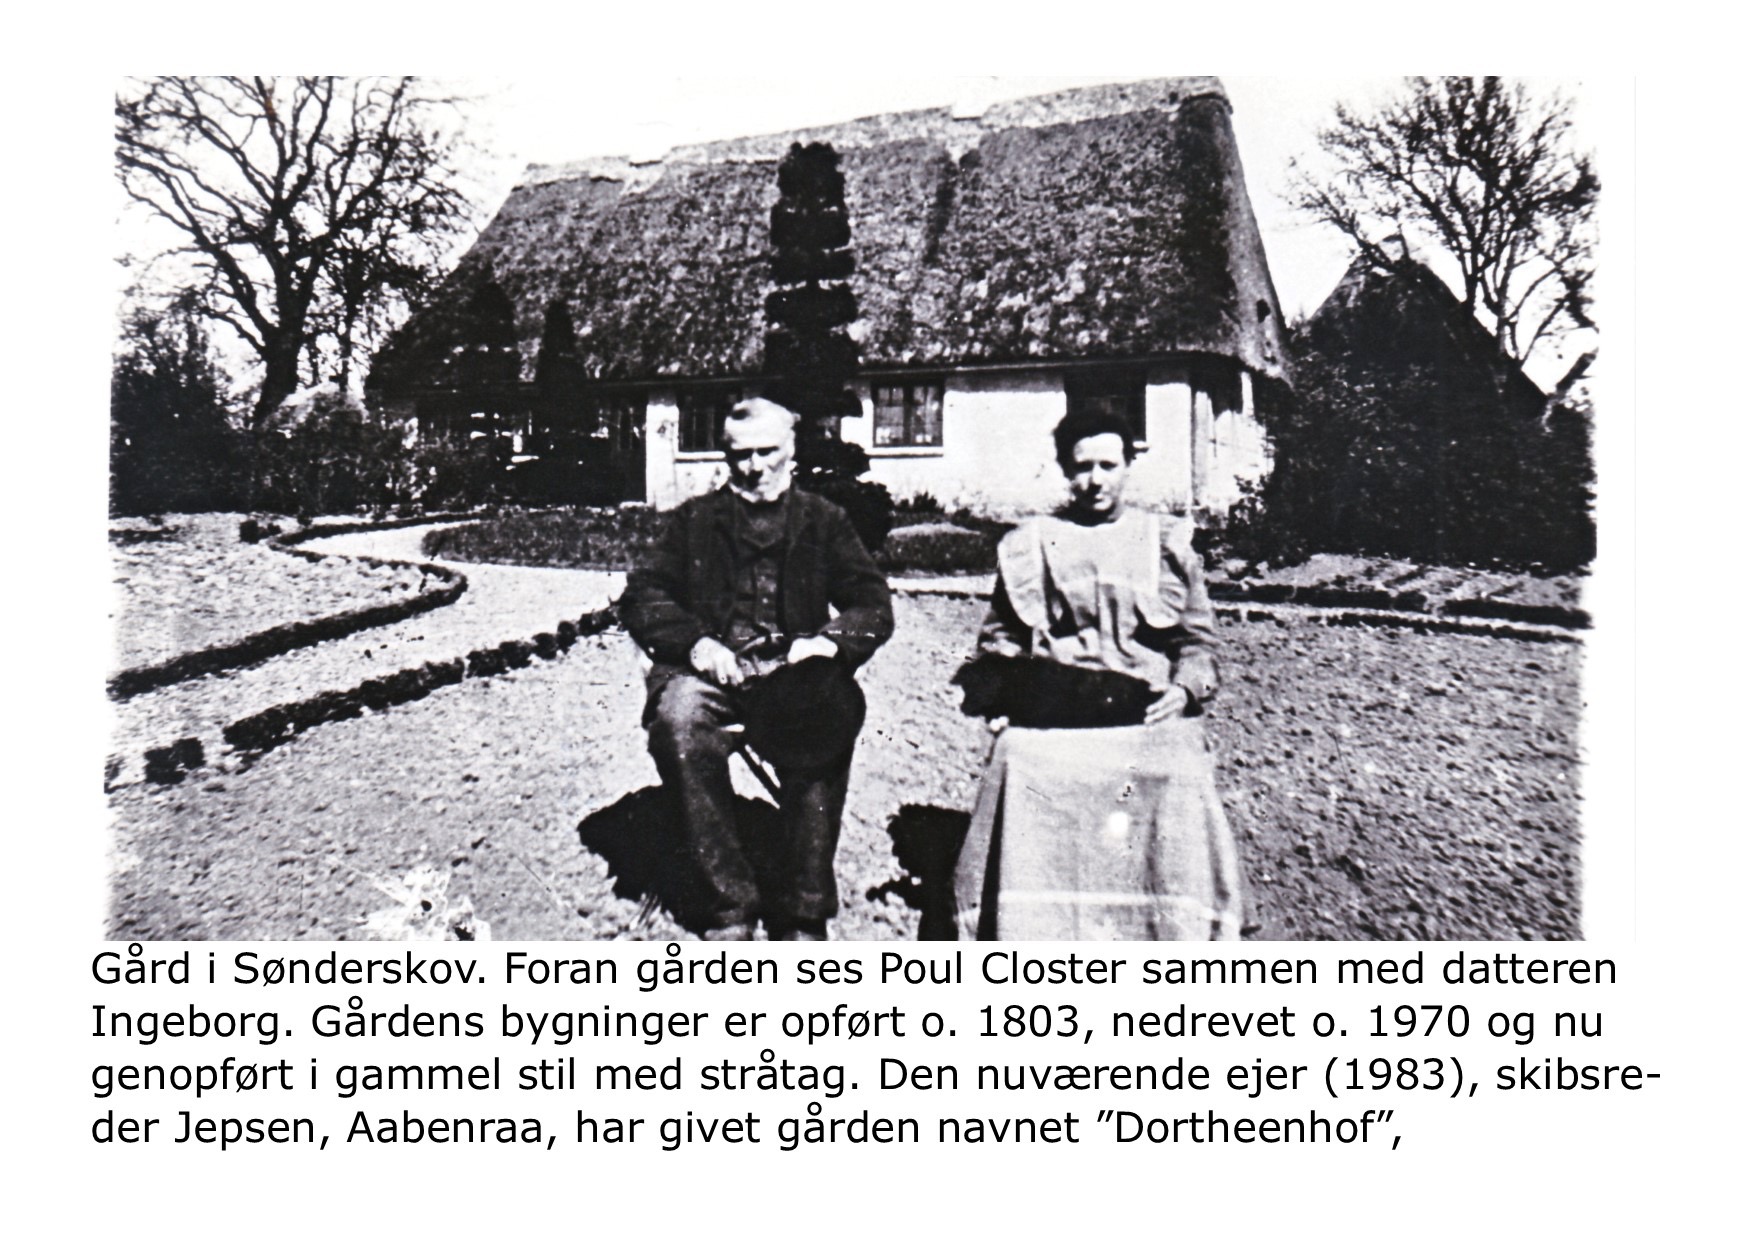 Poul og Ingeborg Closter 1900 